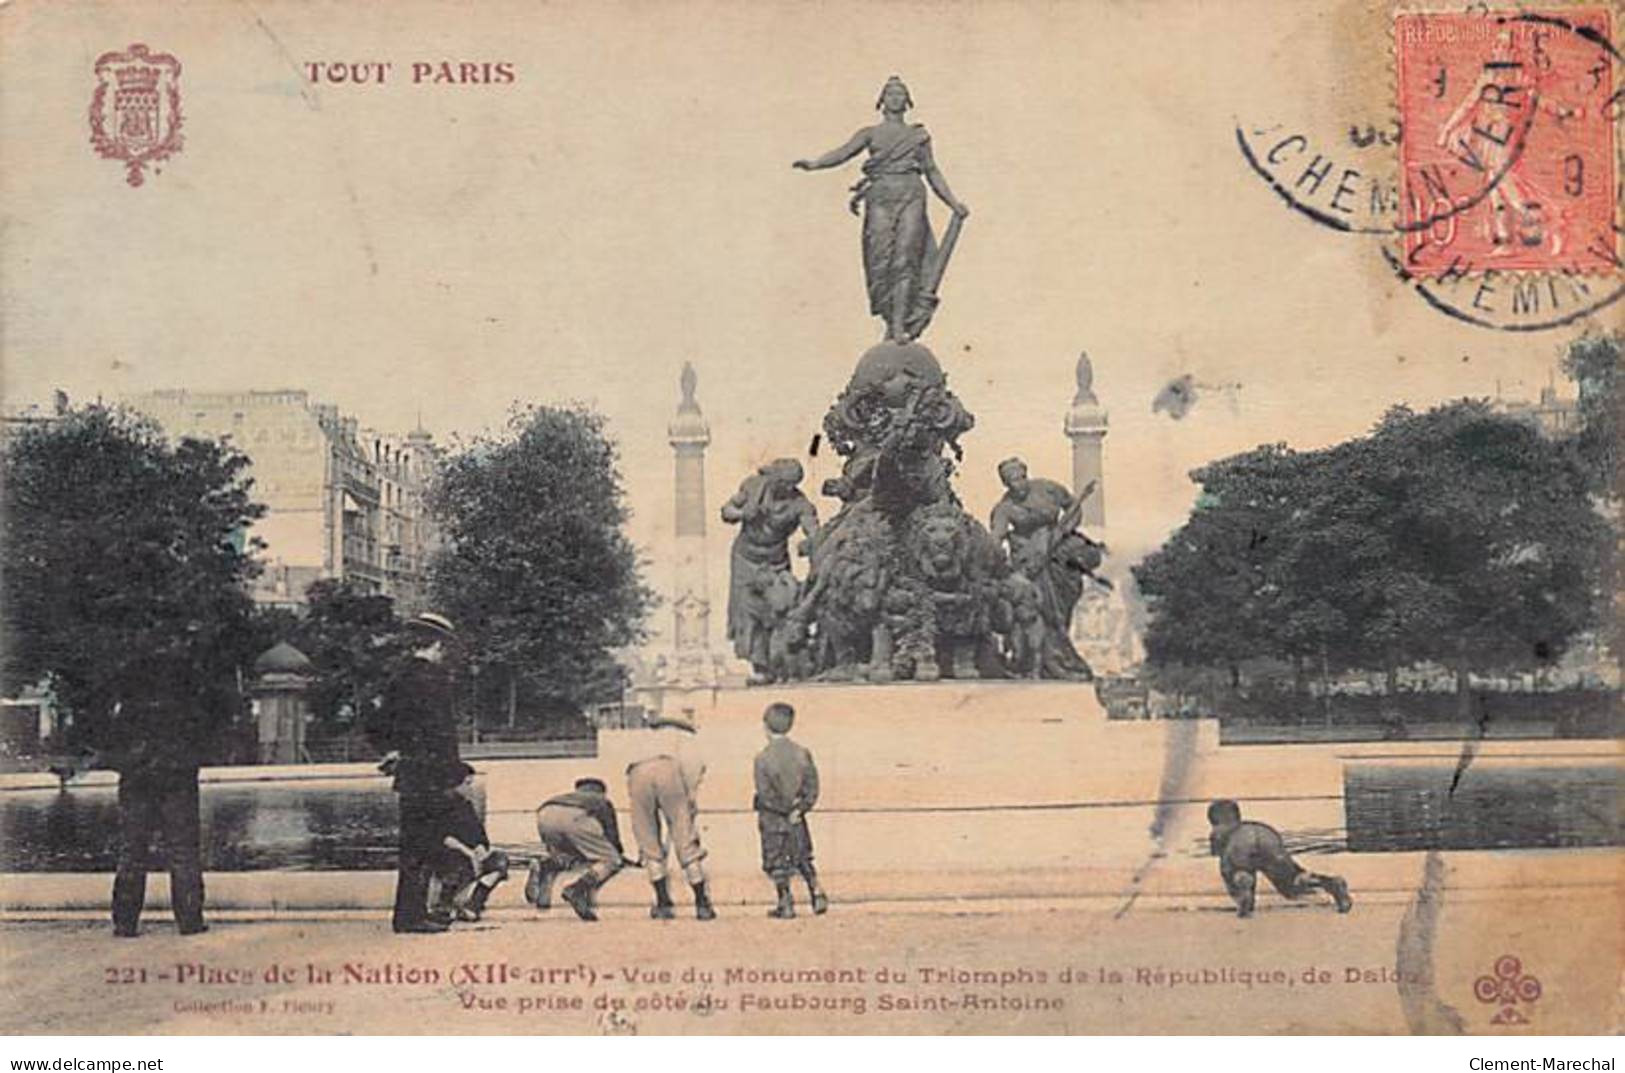 TOUT PARIS - Place De La Nation - F. Fleury - état - District 12